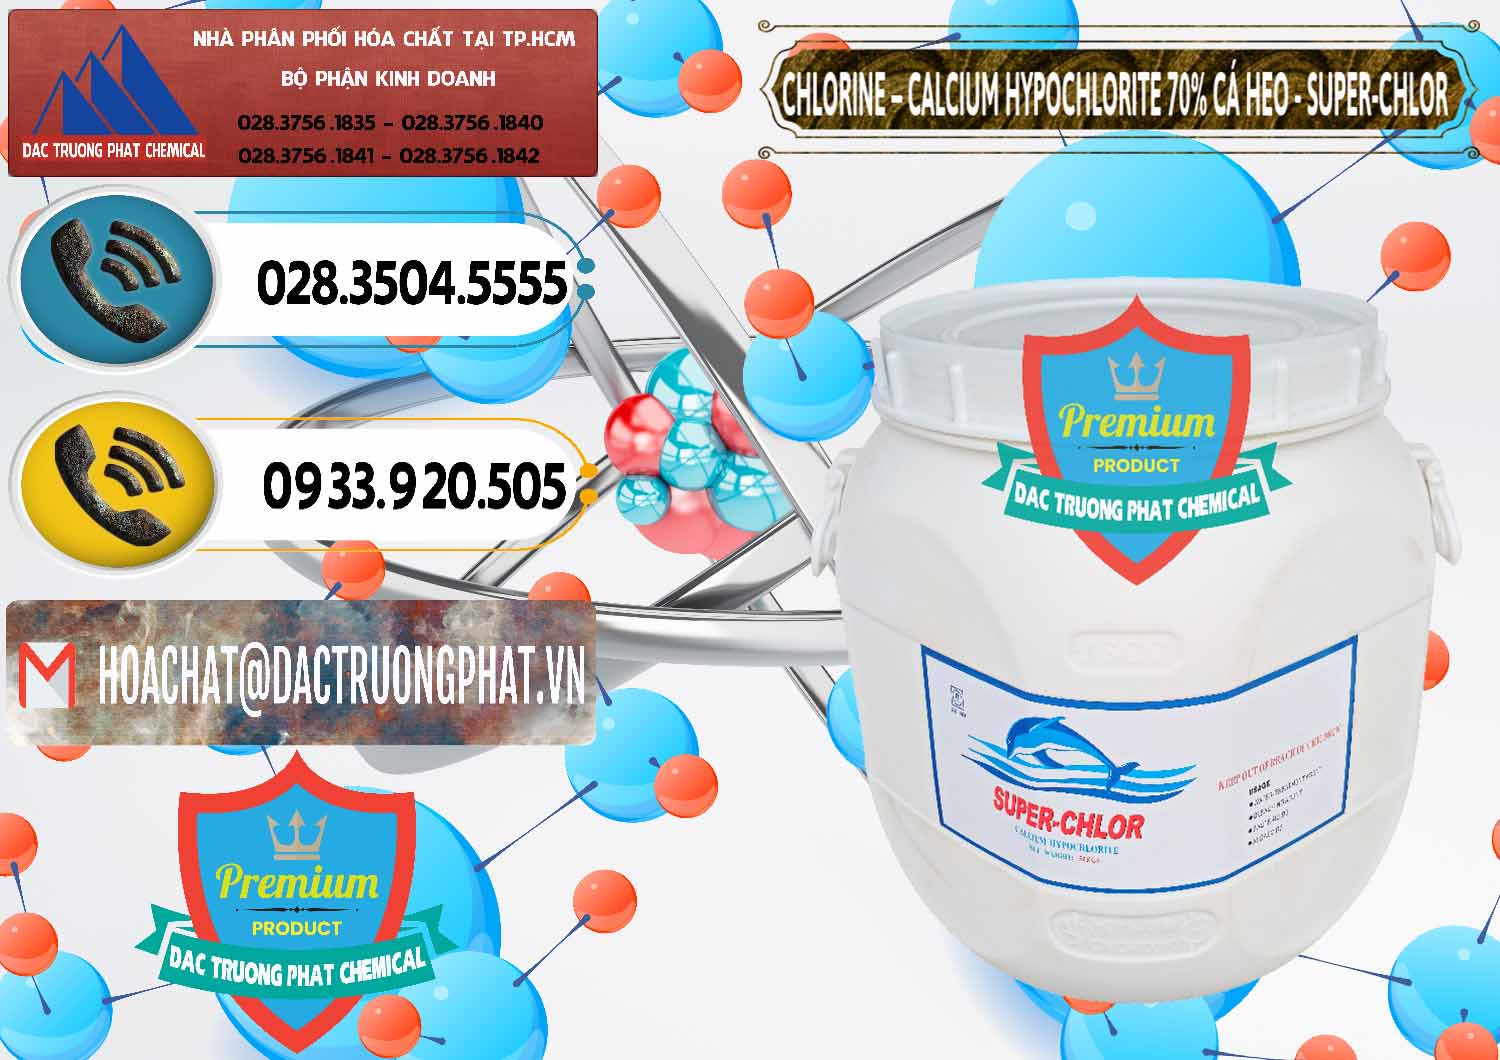 Công ty chuyên cung cấp và bán Clorin - Chlorine Cá Heo 70% Super Chlor Trung Quốc China - 0058 - Nơi chuyên cung cấp và bán hóa chất tại TP.HCM - hoachatdetnhuom.vn